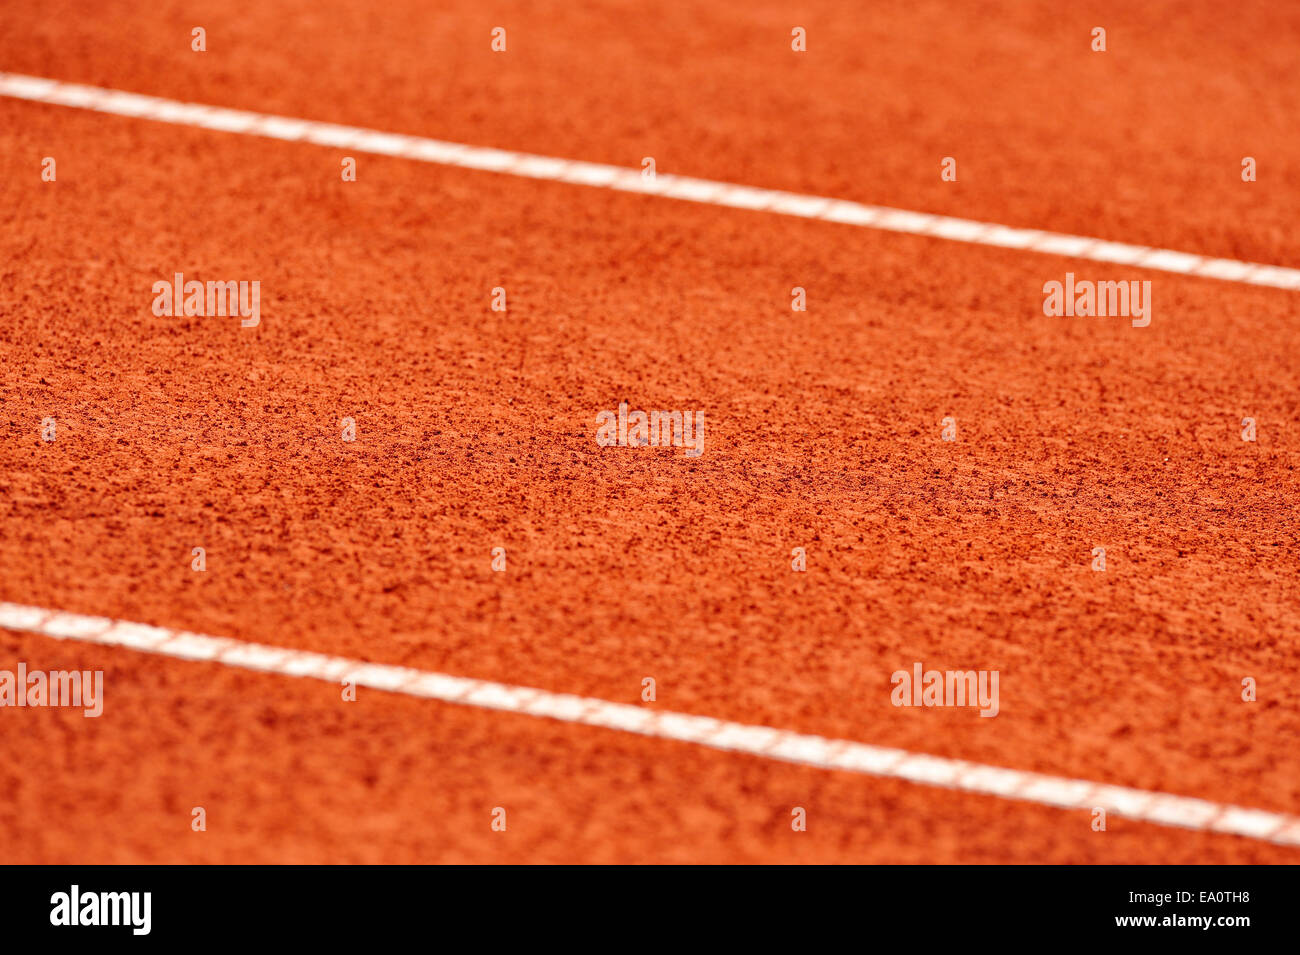 Detalle con margen en un húmedo de tenis de tierra batida Foto de stock